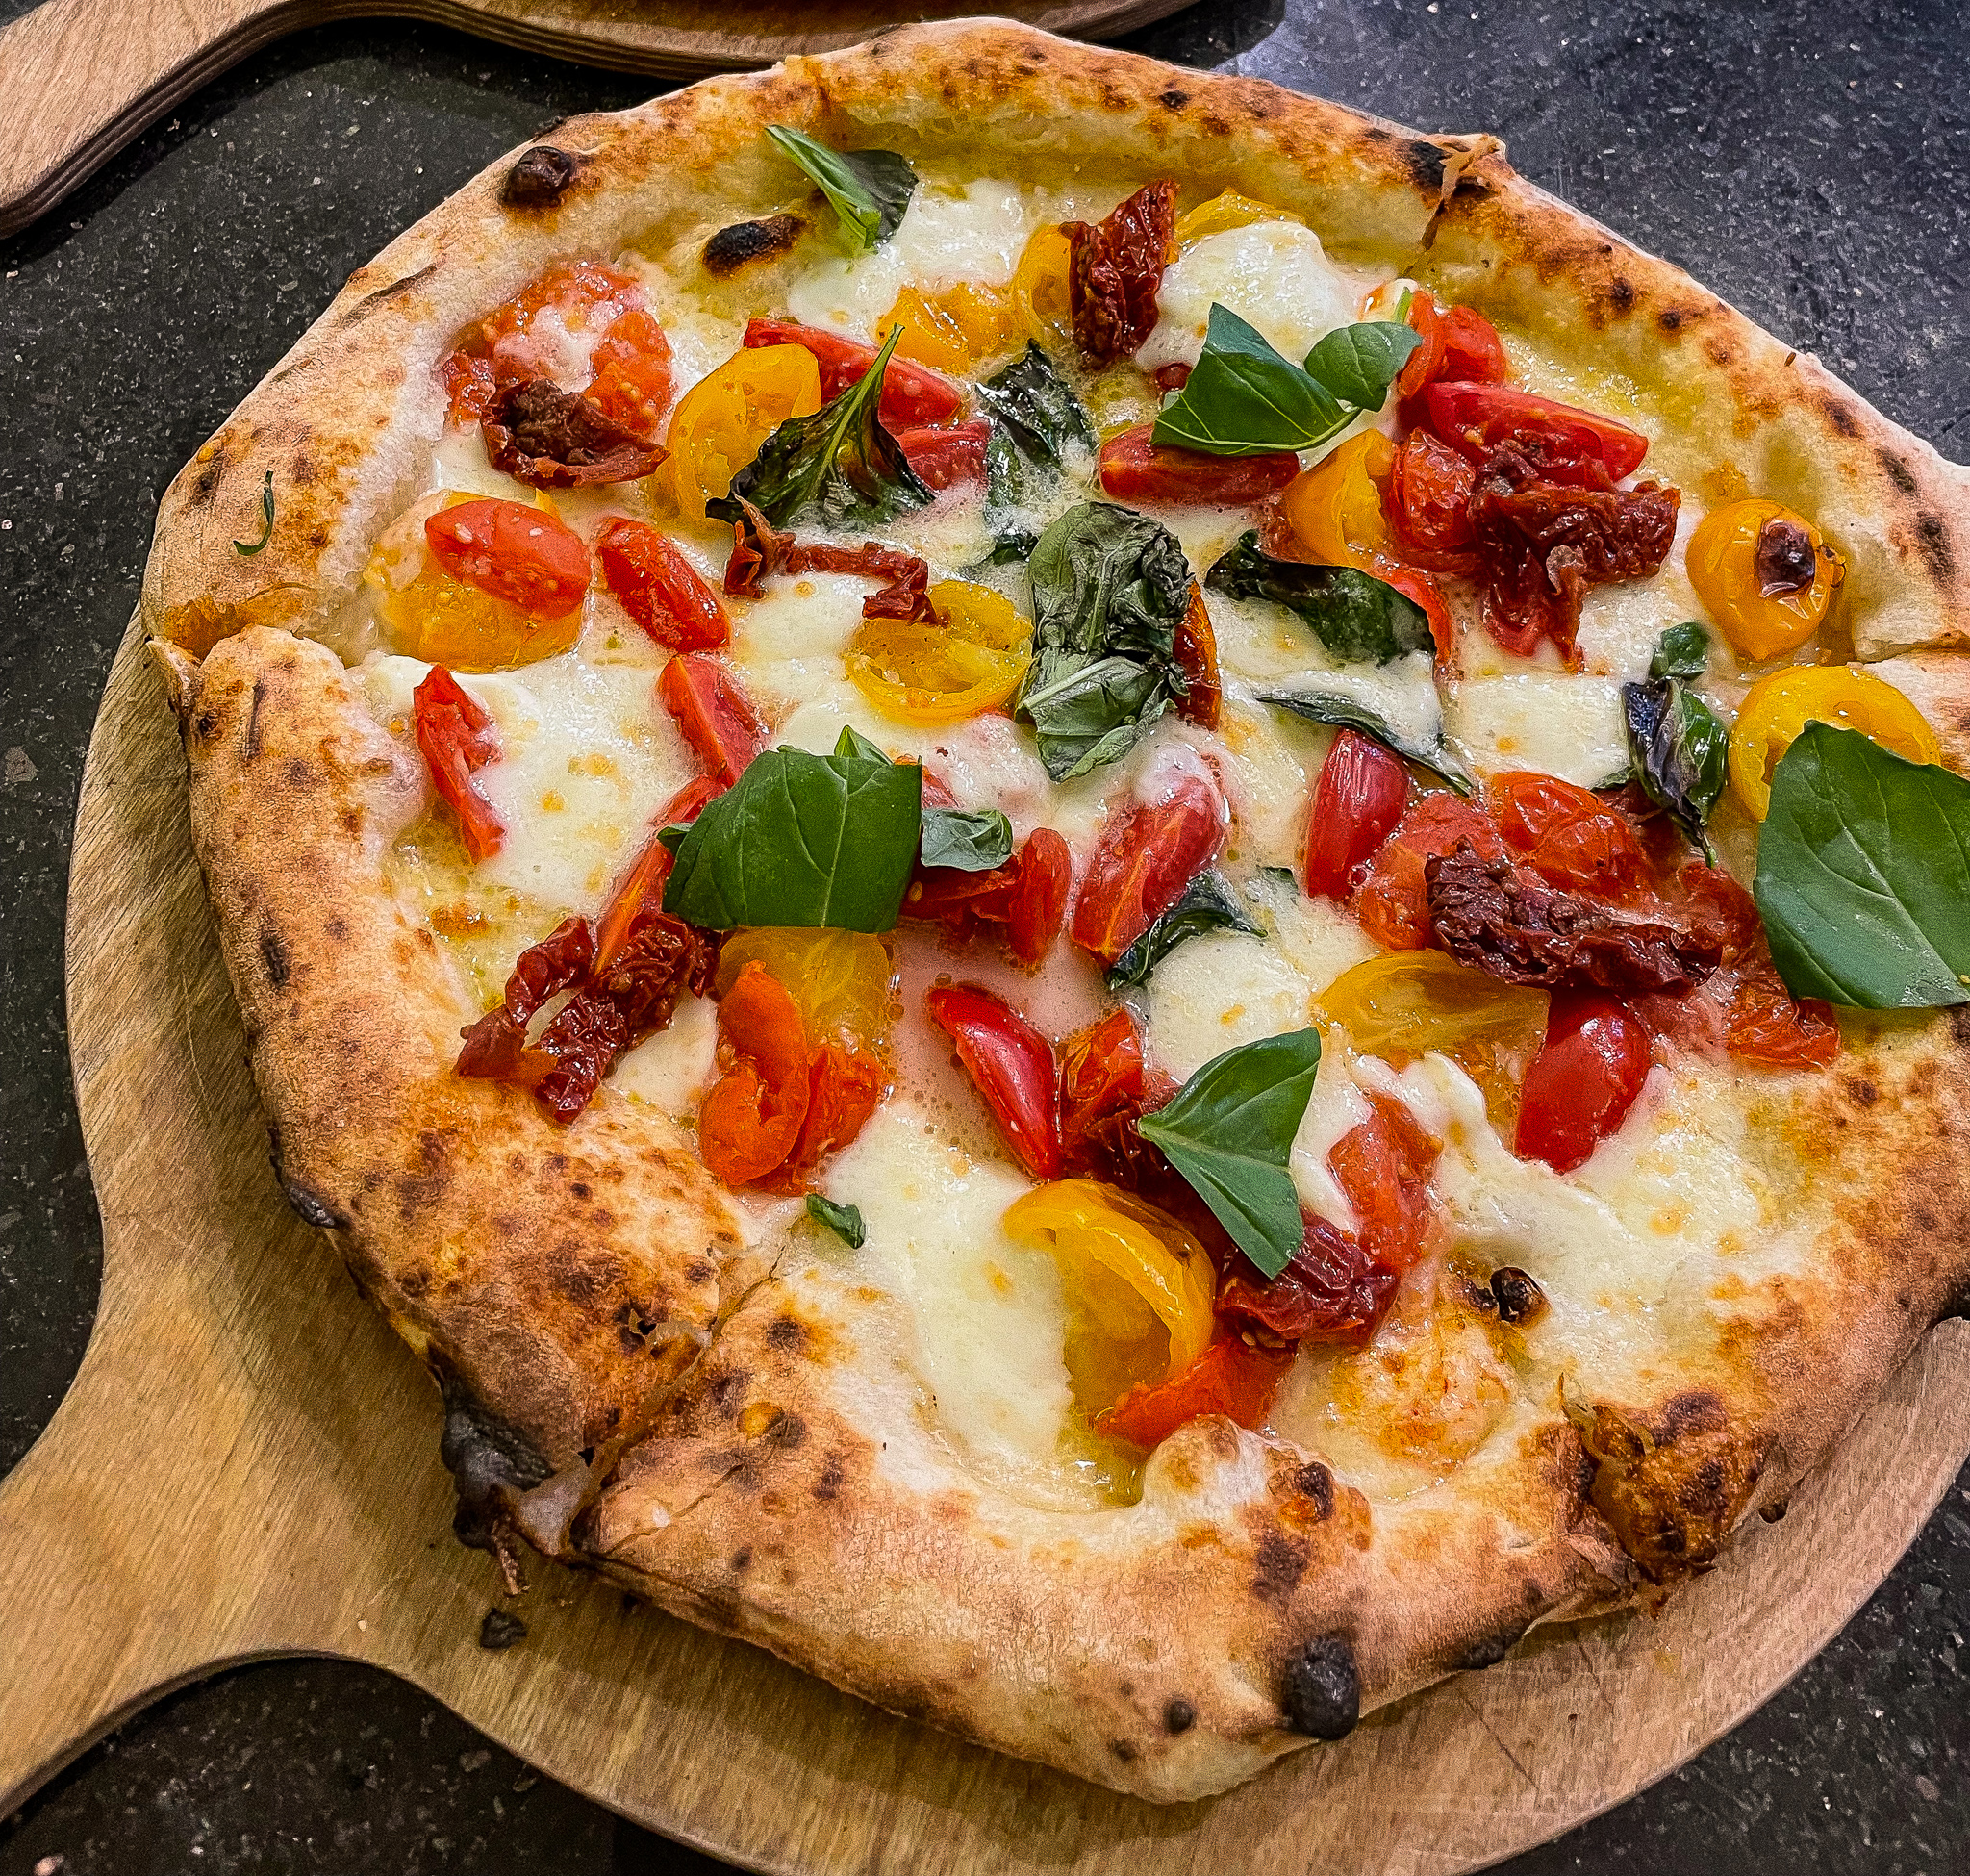 Siciliana Pizza - Tomato Sauce, Black Olives, Capers, Italian Anchovies,  Mozzarella di Bufala, EVOO